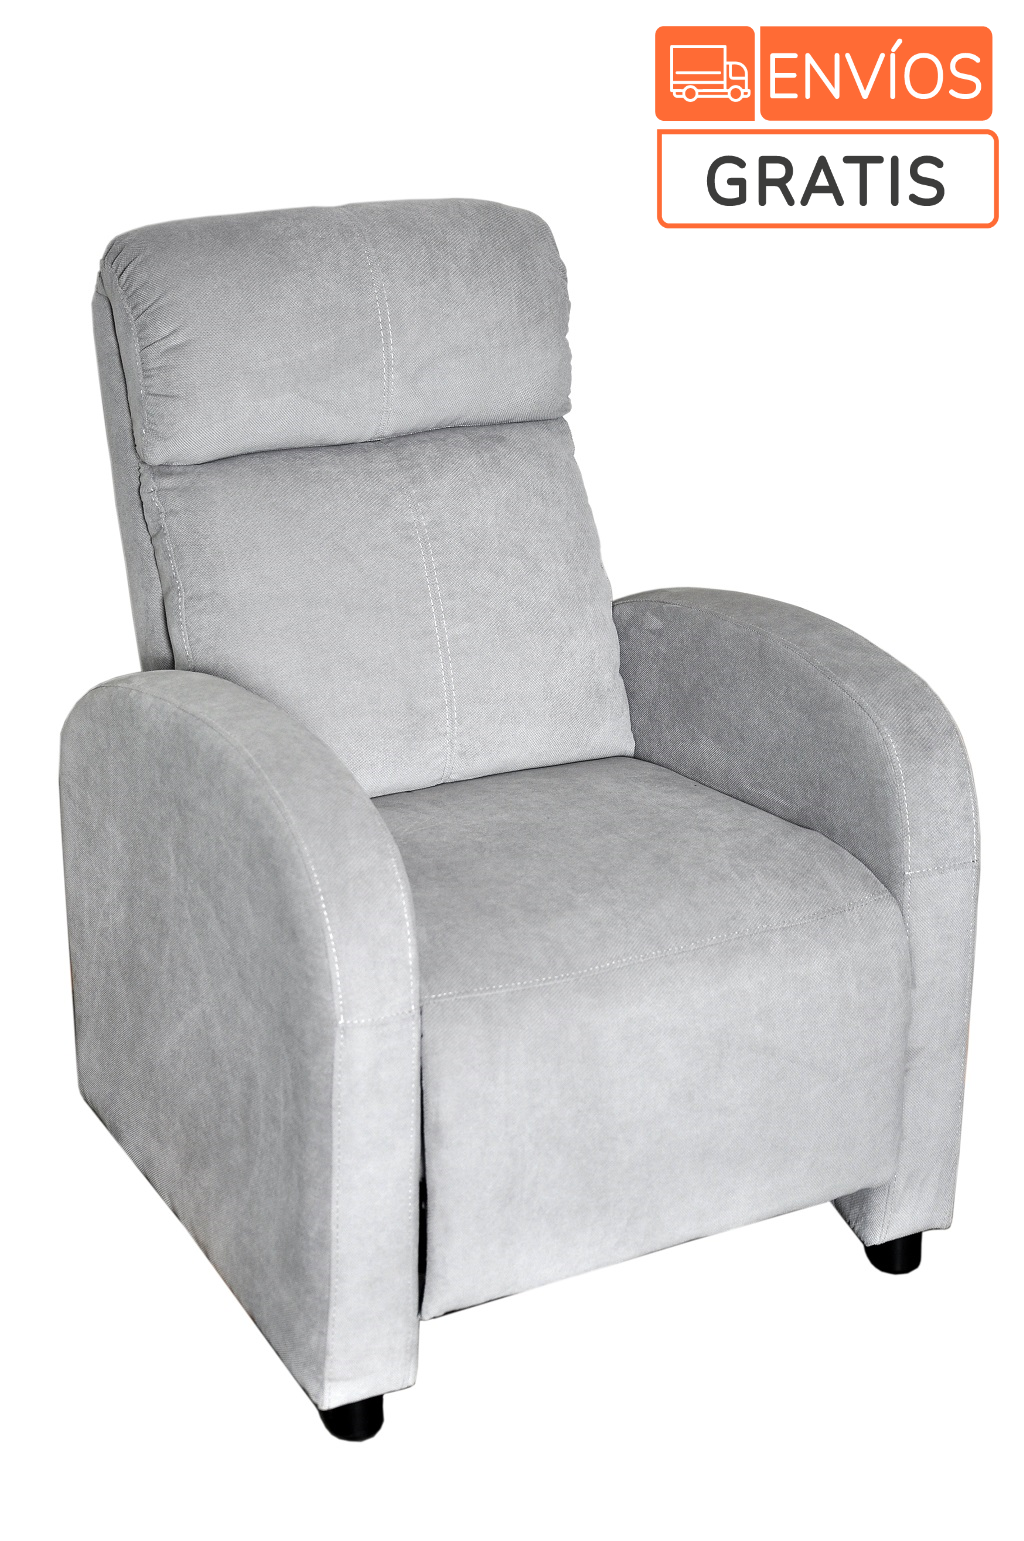 silla-reclinable-inoa,-gris-claro